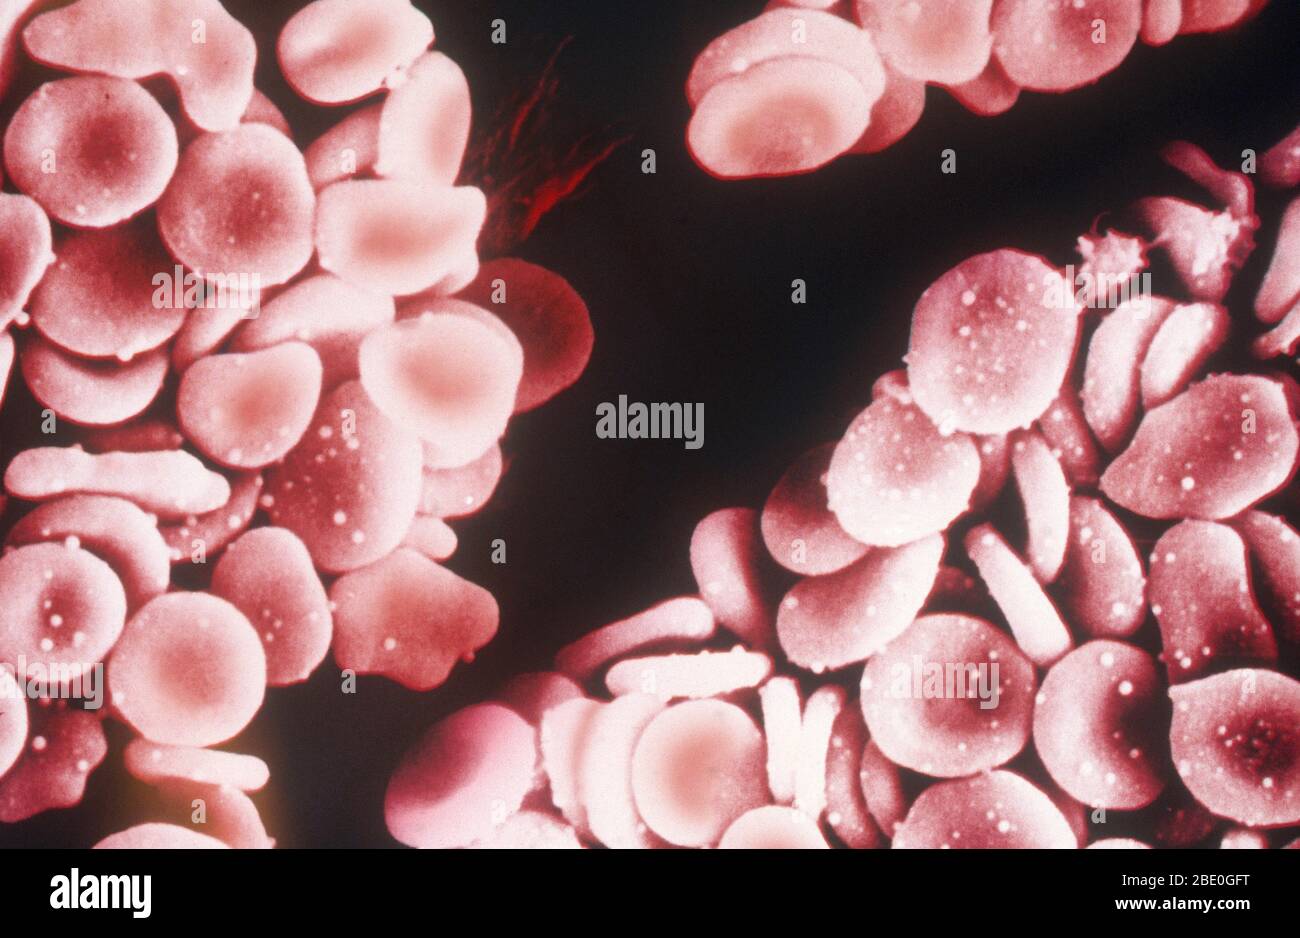 Farbige Rasterelektronenmikrograph (SEM) von menschlichen roten Blutkörperchen (Erythrozyten). Rote Blutkörperchen sind Biconcave, die ihnen eine große Oberfläche für den Gasaustausch und hoch elastisch, so dass sie durch schmale Kapillargefäße passieren. Der Kern und andere Organellen gehen mit der Zellreife verloren. Das Innere der Zelle ist mit Hämoglobin, einem roten Eisen-haltigen Pigment, das eine Sauerstofftragfähigkeit hat, verpackt. Die Hauptfunktion der roten Blutkörperchen ist es, Sauerstoff an Körpergewebe zu verteilen und den Abfall Kohlendioxid zurück in die Lunge zu tragen. Stockfoto